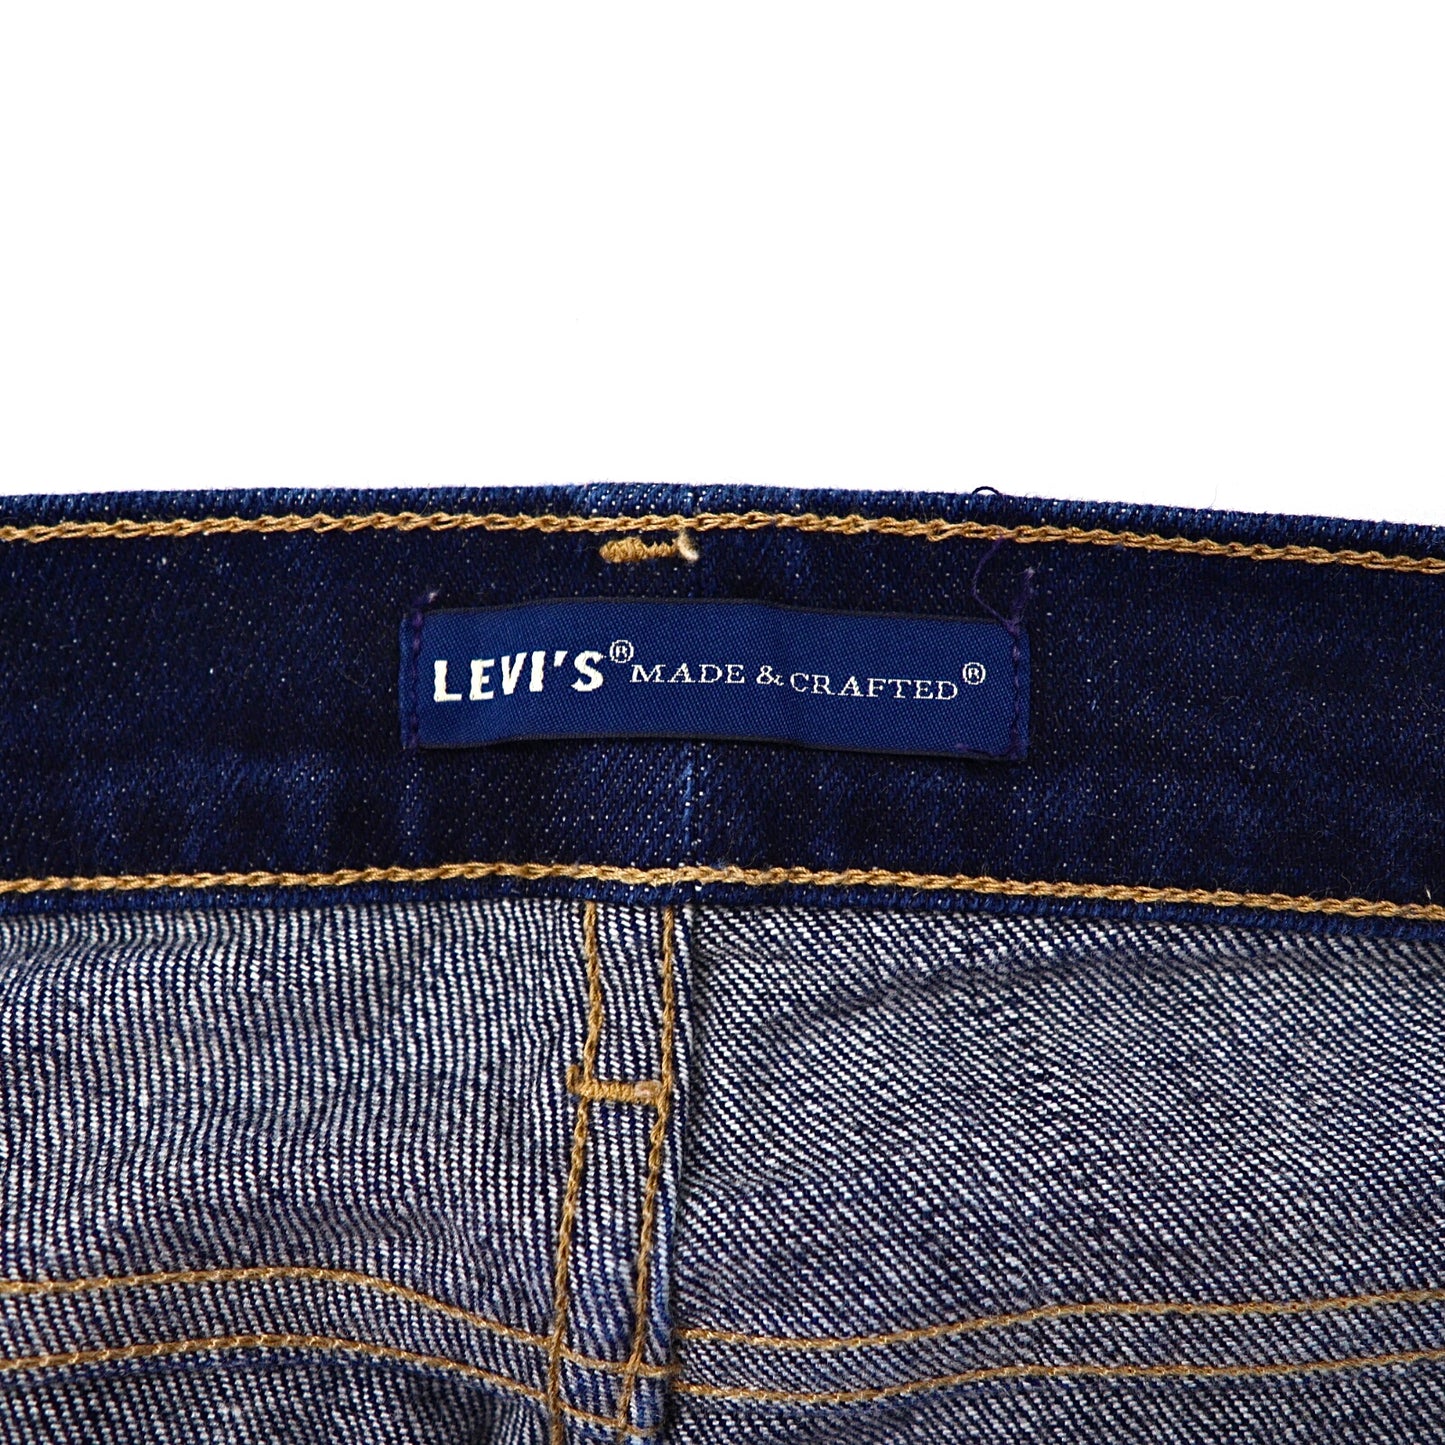 LEVI'S MADE & CRAFTED スキニーパンツ 26 ブルー デニム トルコ製